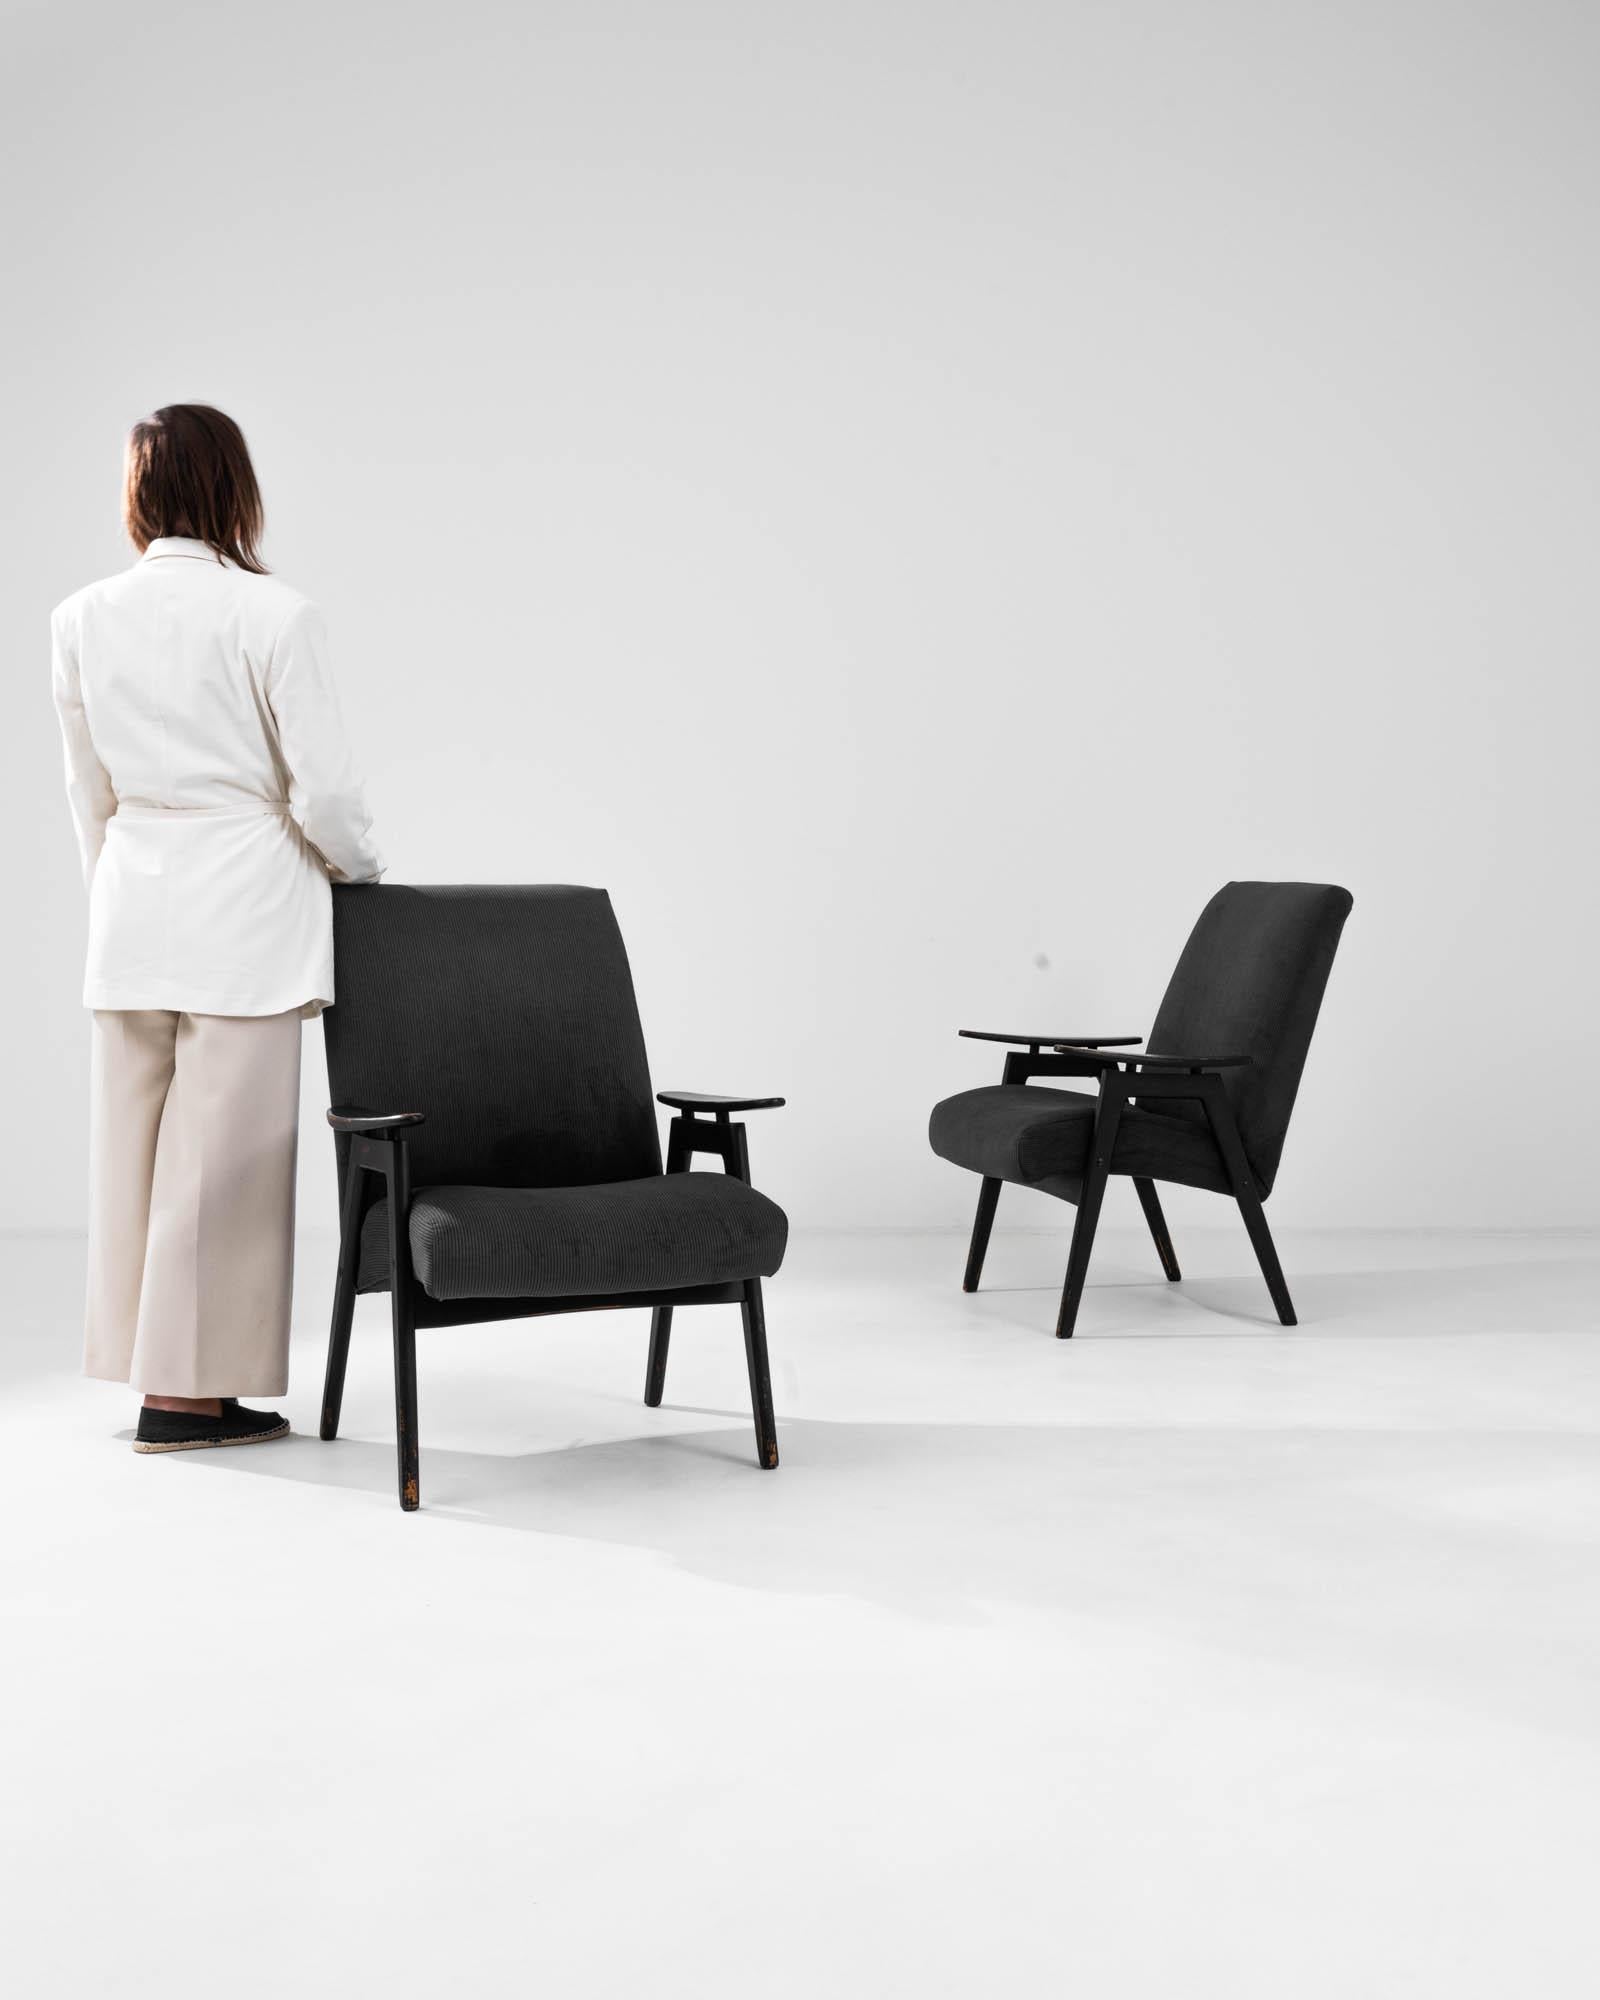 Entrez dans le royaume du design classique avec cette superbe paire de fauteuils tapissés tchèques des années 1960 par TON. Leur tapisserie nervurée noire frappante et leurs accoudoirs élégants mettent en valeur la quintessence de l'esthétique du